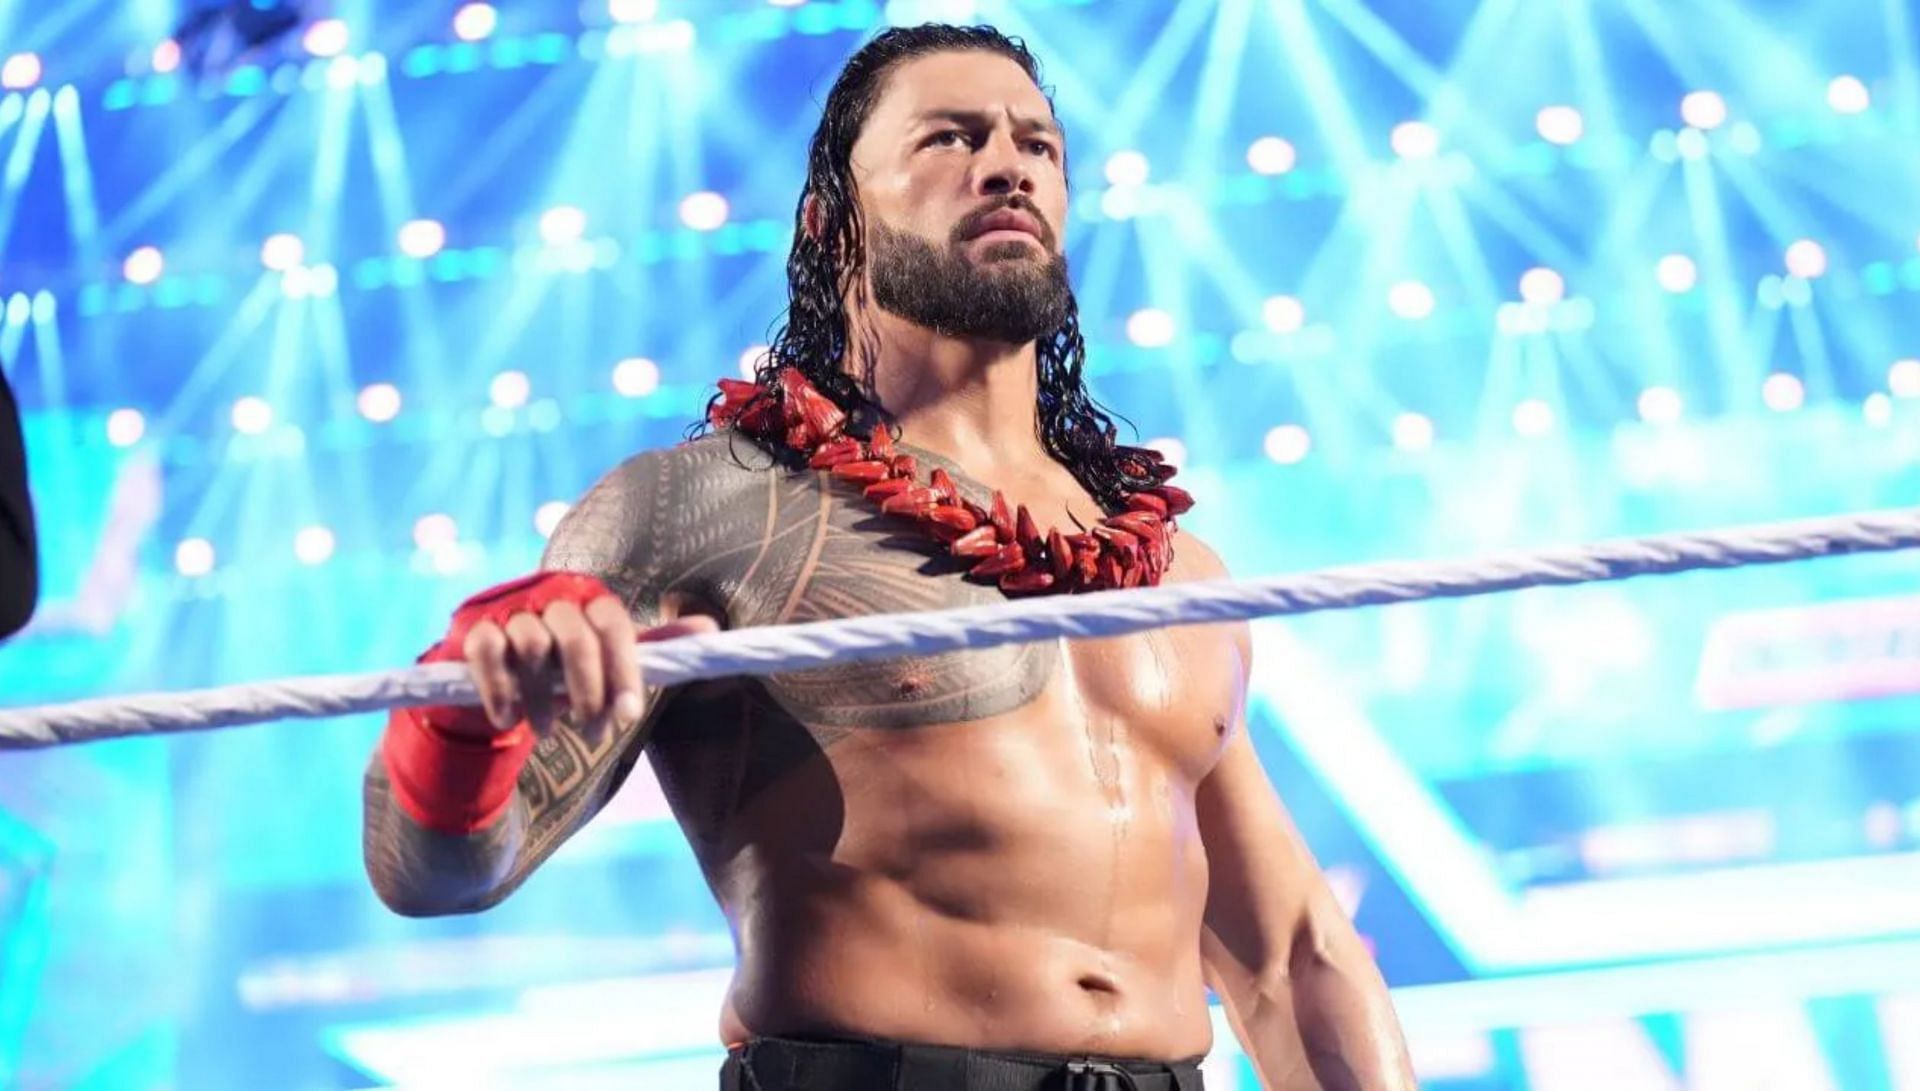 जानिए WWE दिग्गज रोमन रेंस को लेकर क्या कहा गया?